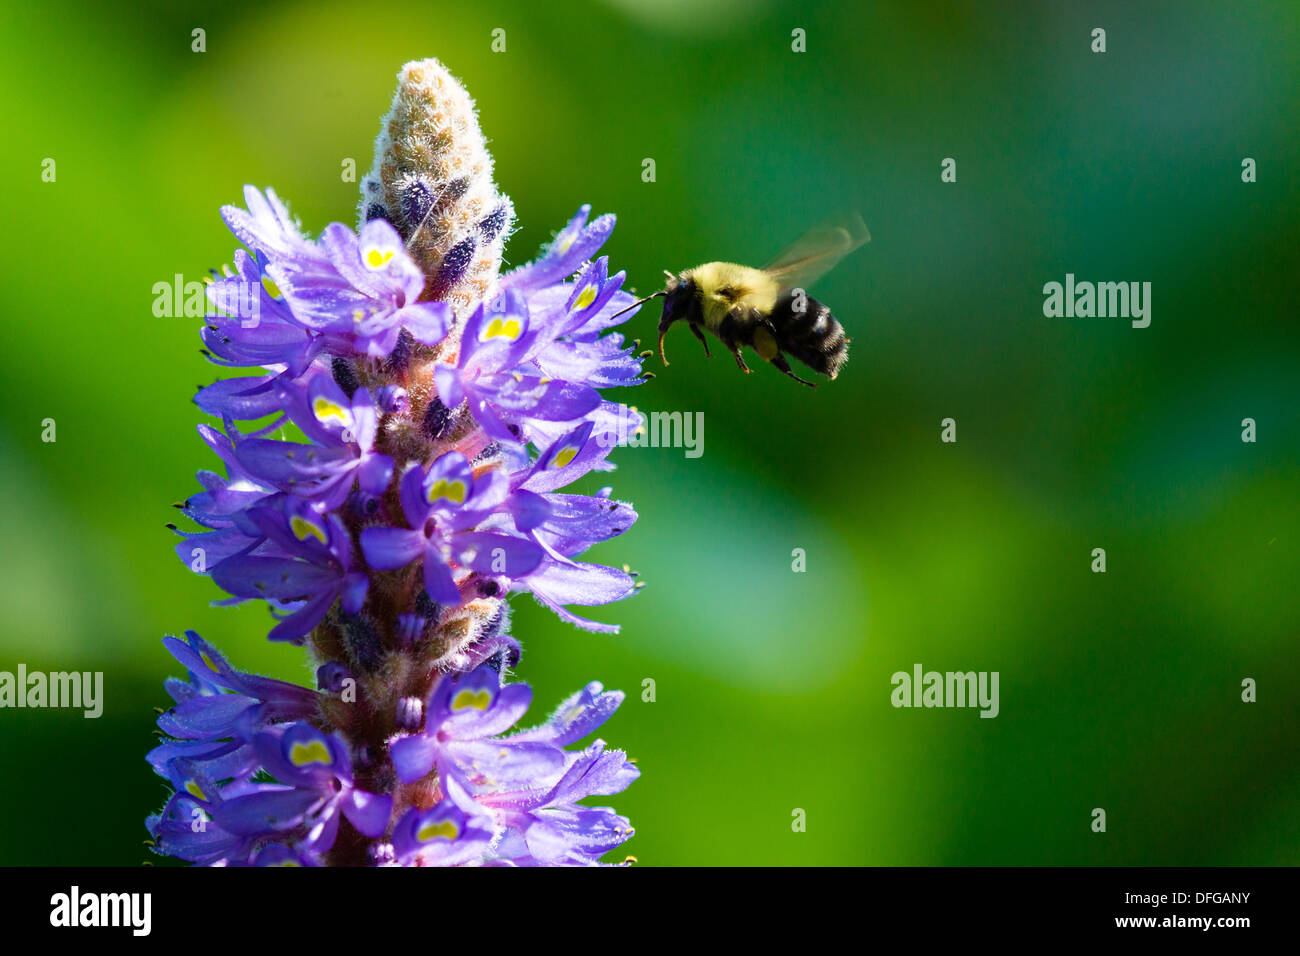 Una abeja en vuelo se prepara para aterrizar en una flor y recoger el polen. Foto de stock